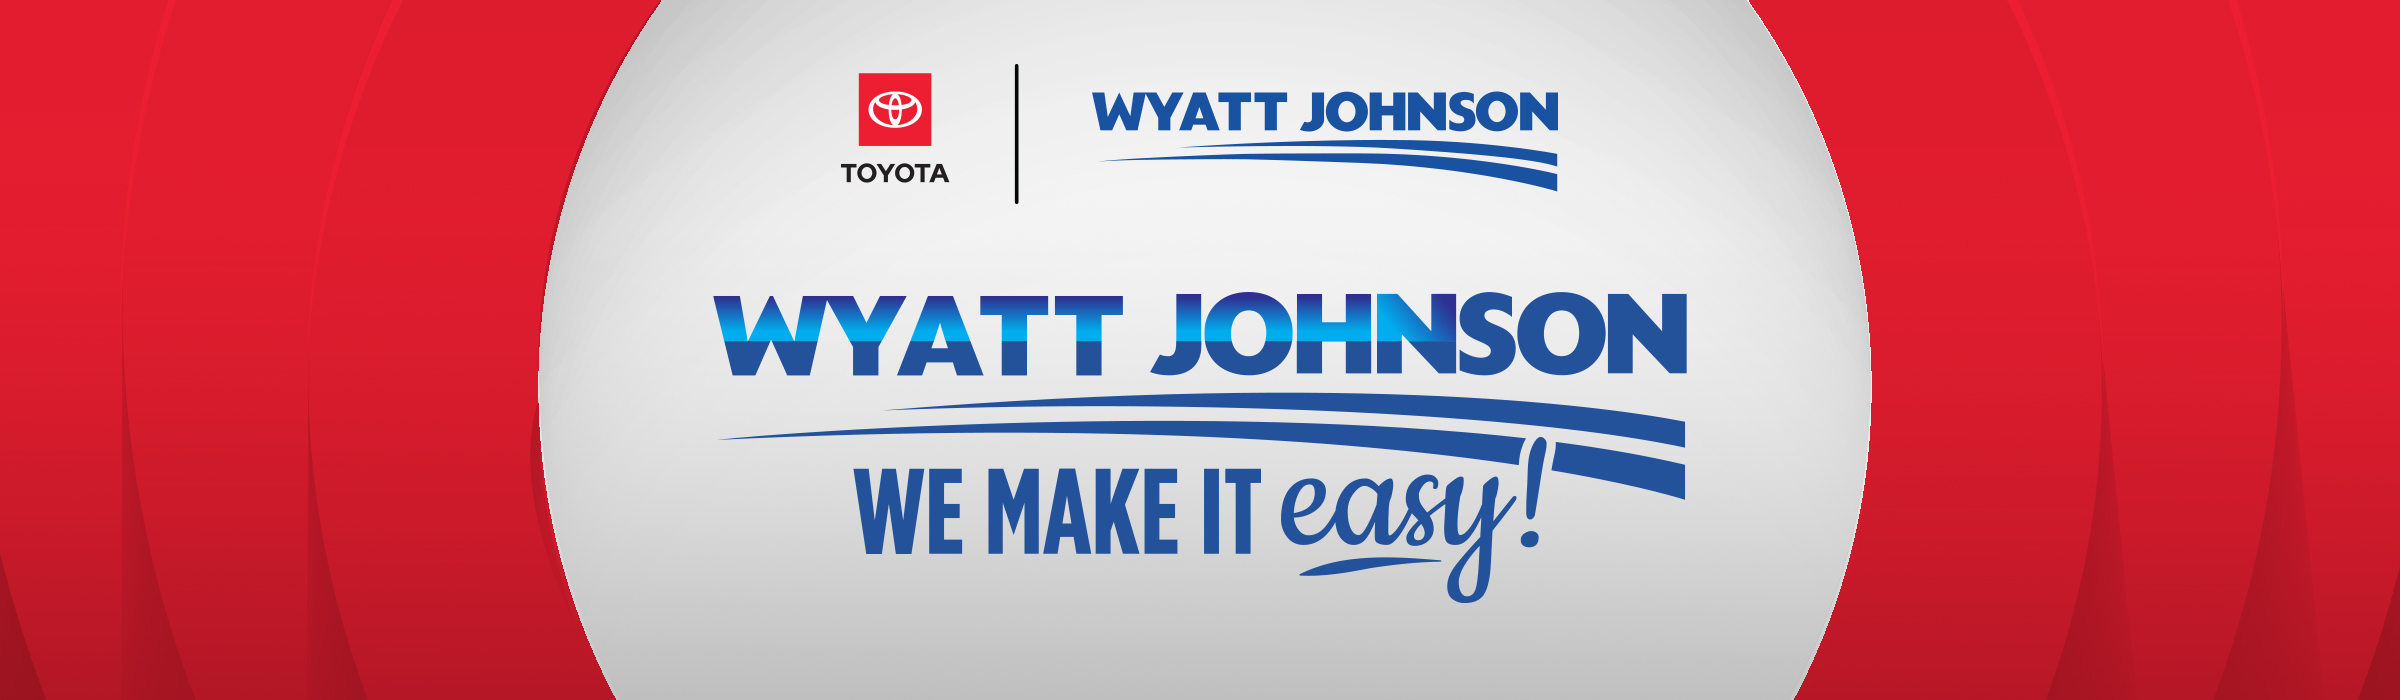 Wyatt Johnson Toyota We Make It Easy! Logo